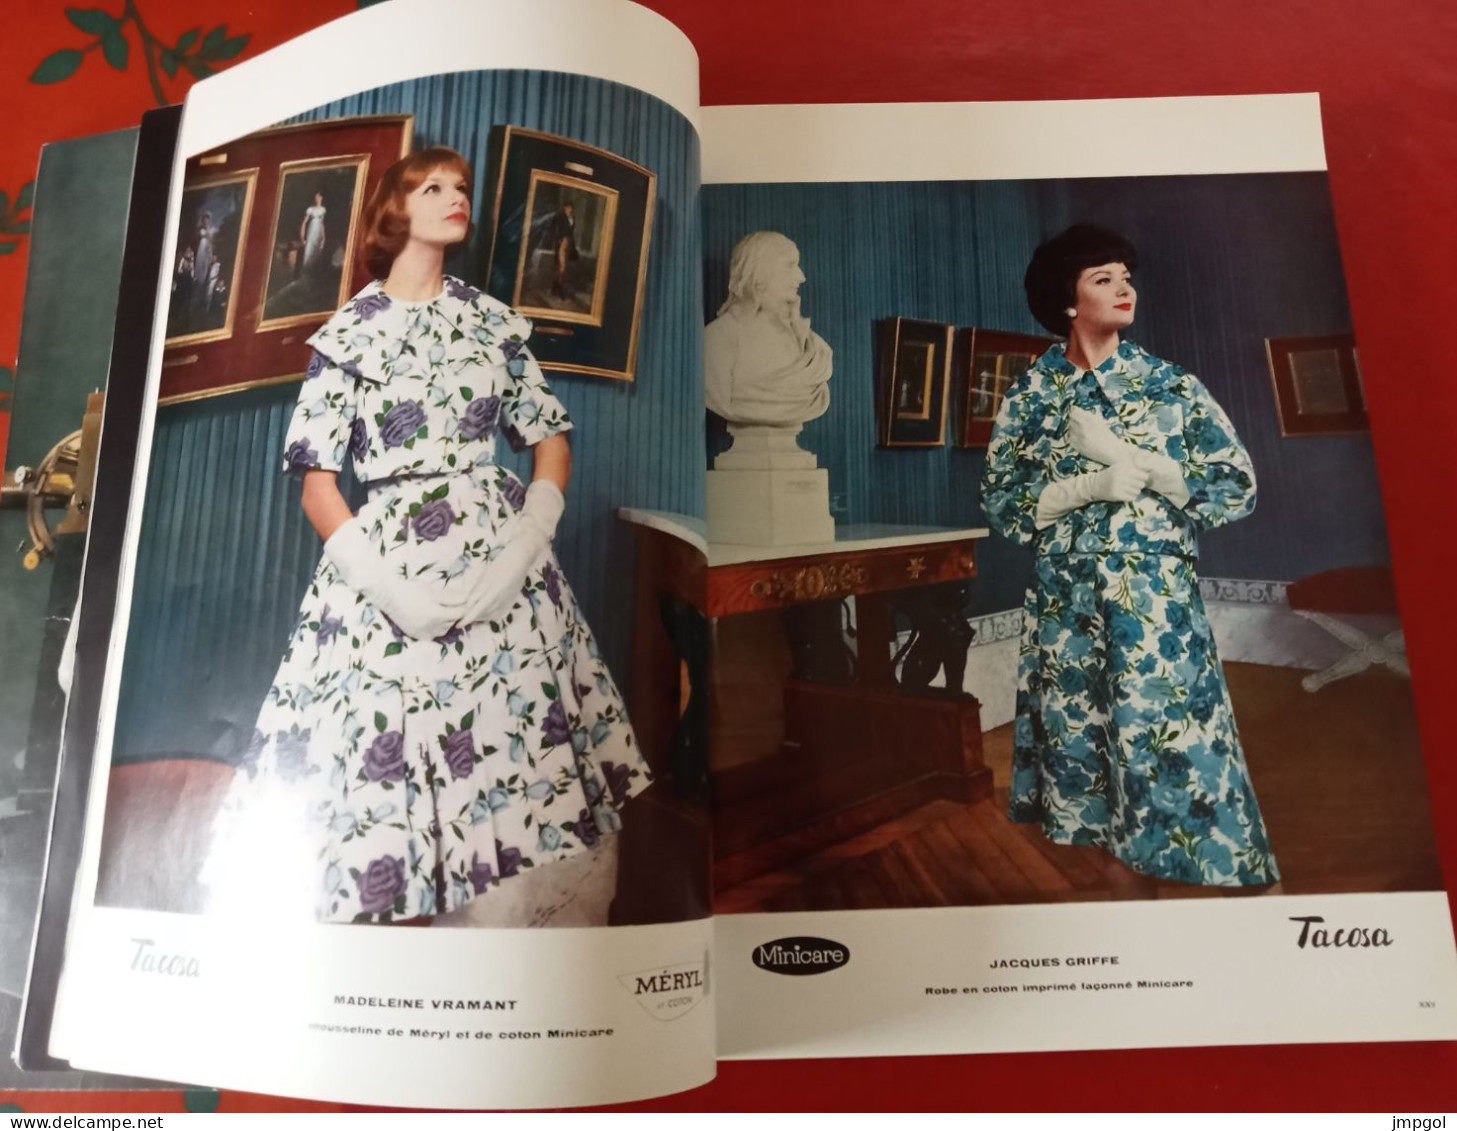 Officiel De La Couture Et De La Mode De Paris 1959 Collection Printemps Dior Patou Balmain De Rauch Heim Cardin Givenchy - Mode